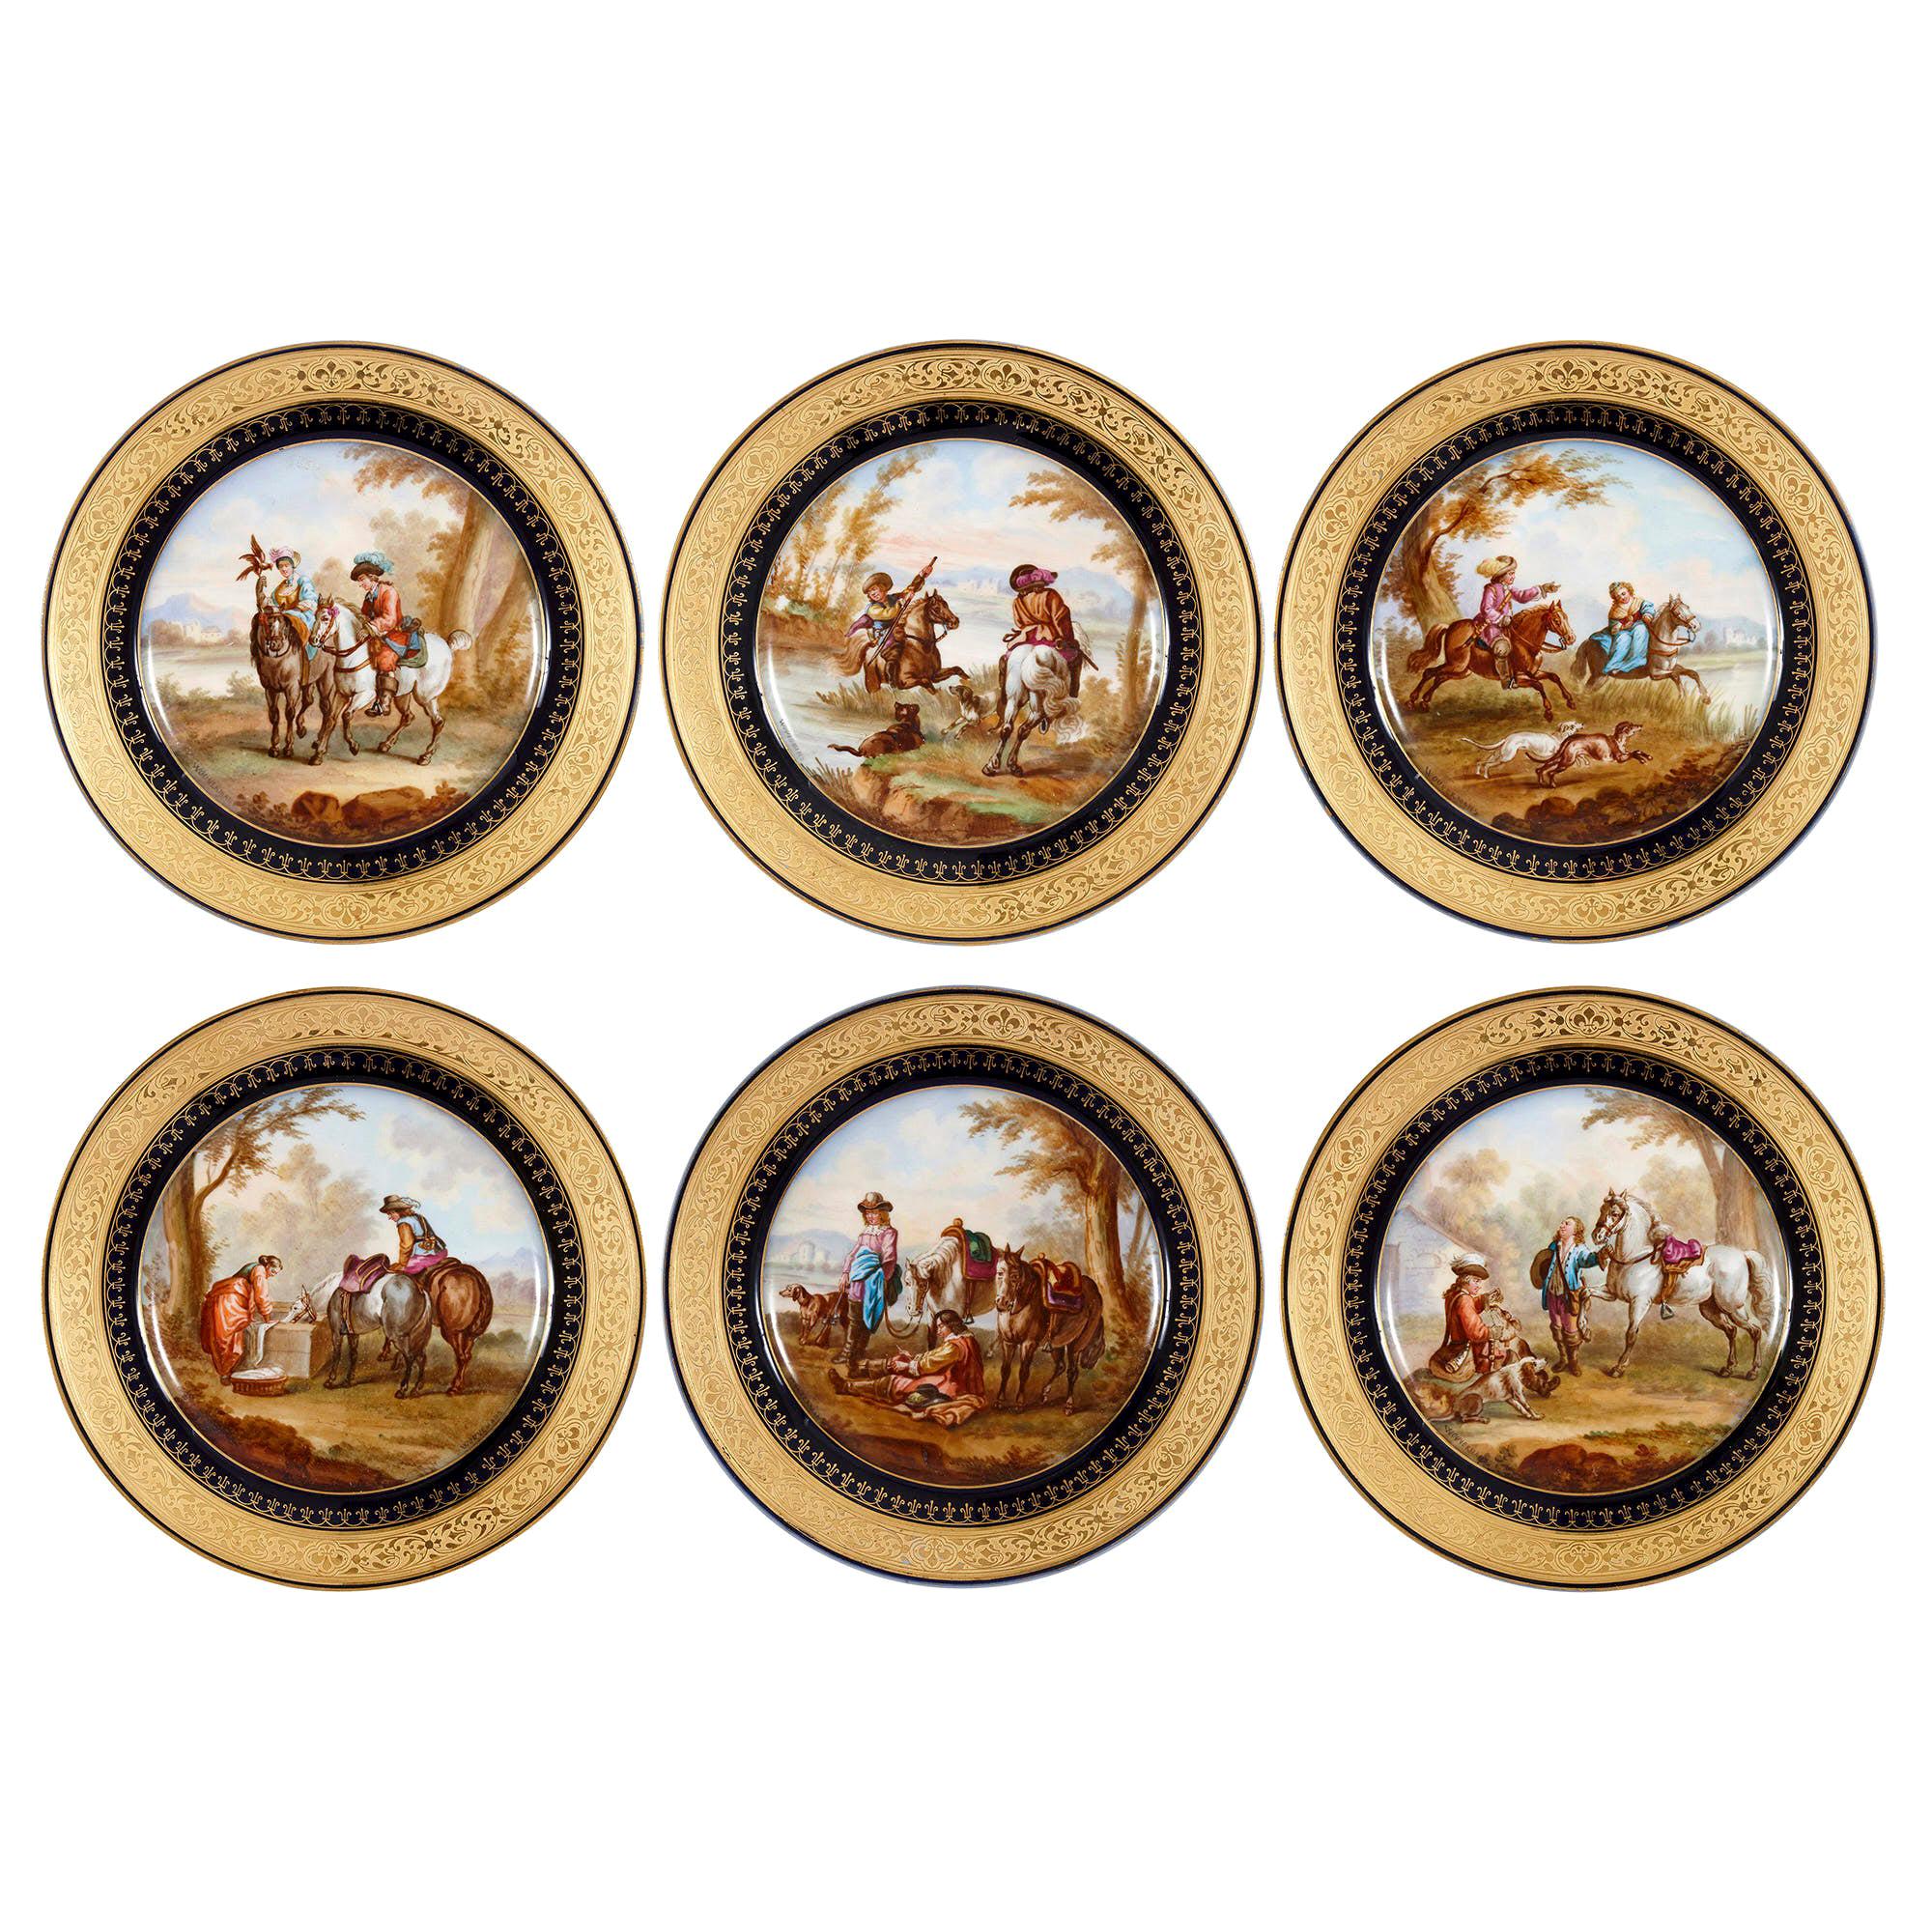 Sechs Porzellanteller im Stil des Rokoko von Sèvres